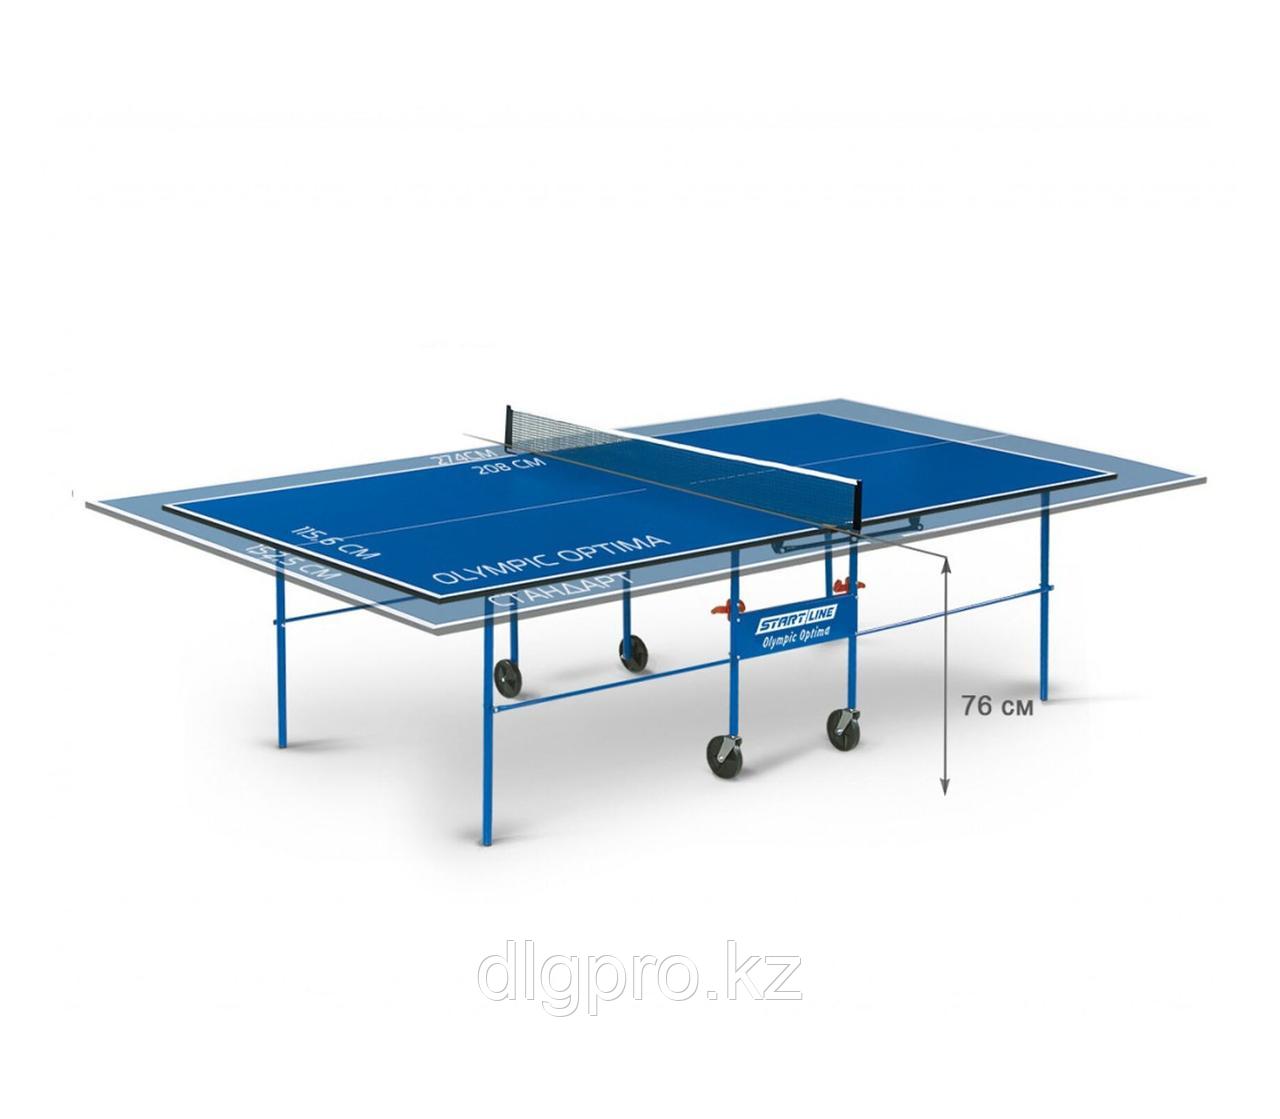 Теннисный стол Start line OLYMPIC с сеткой Blue